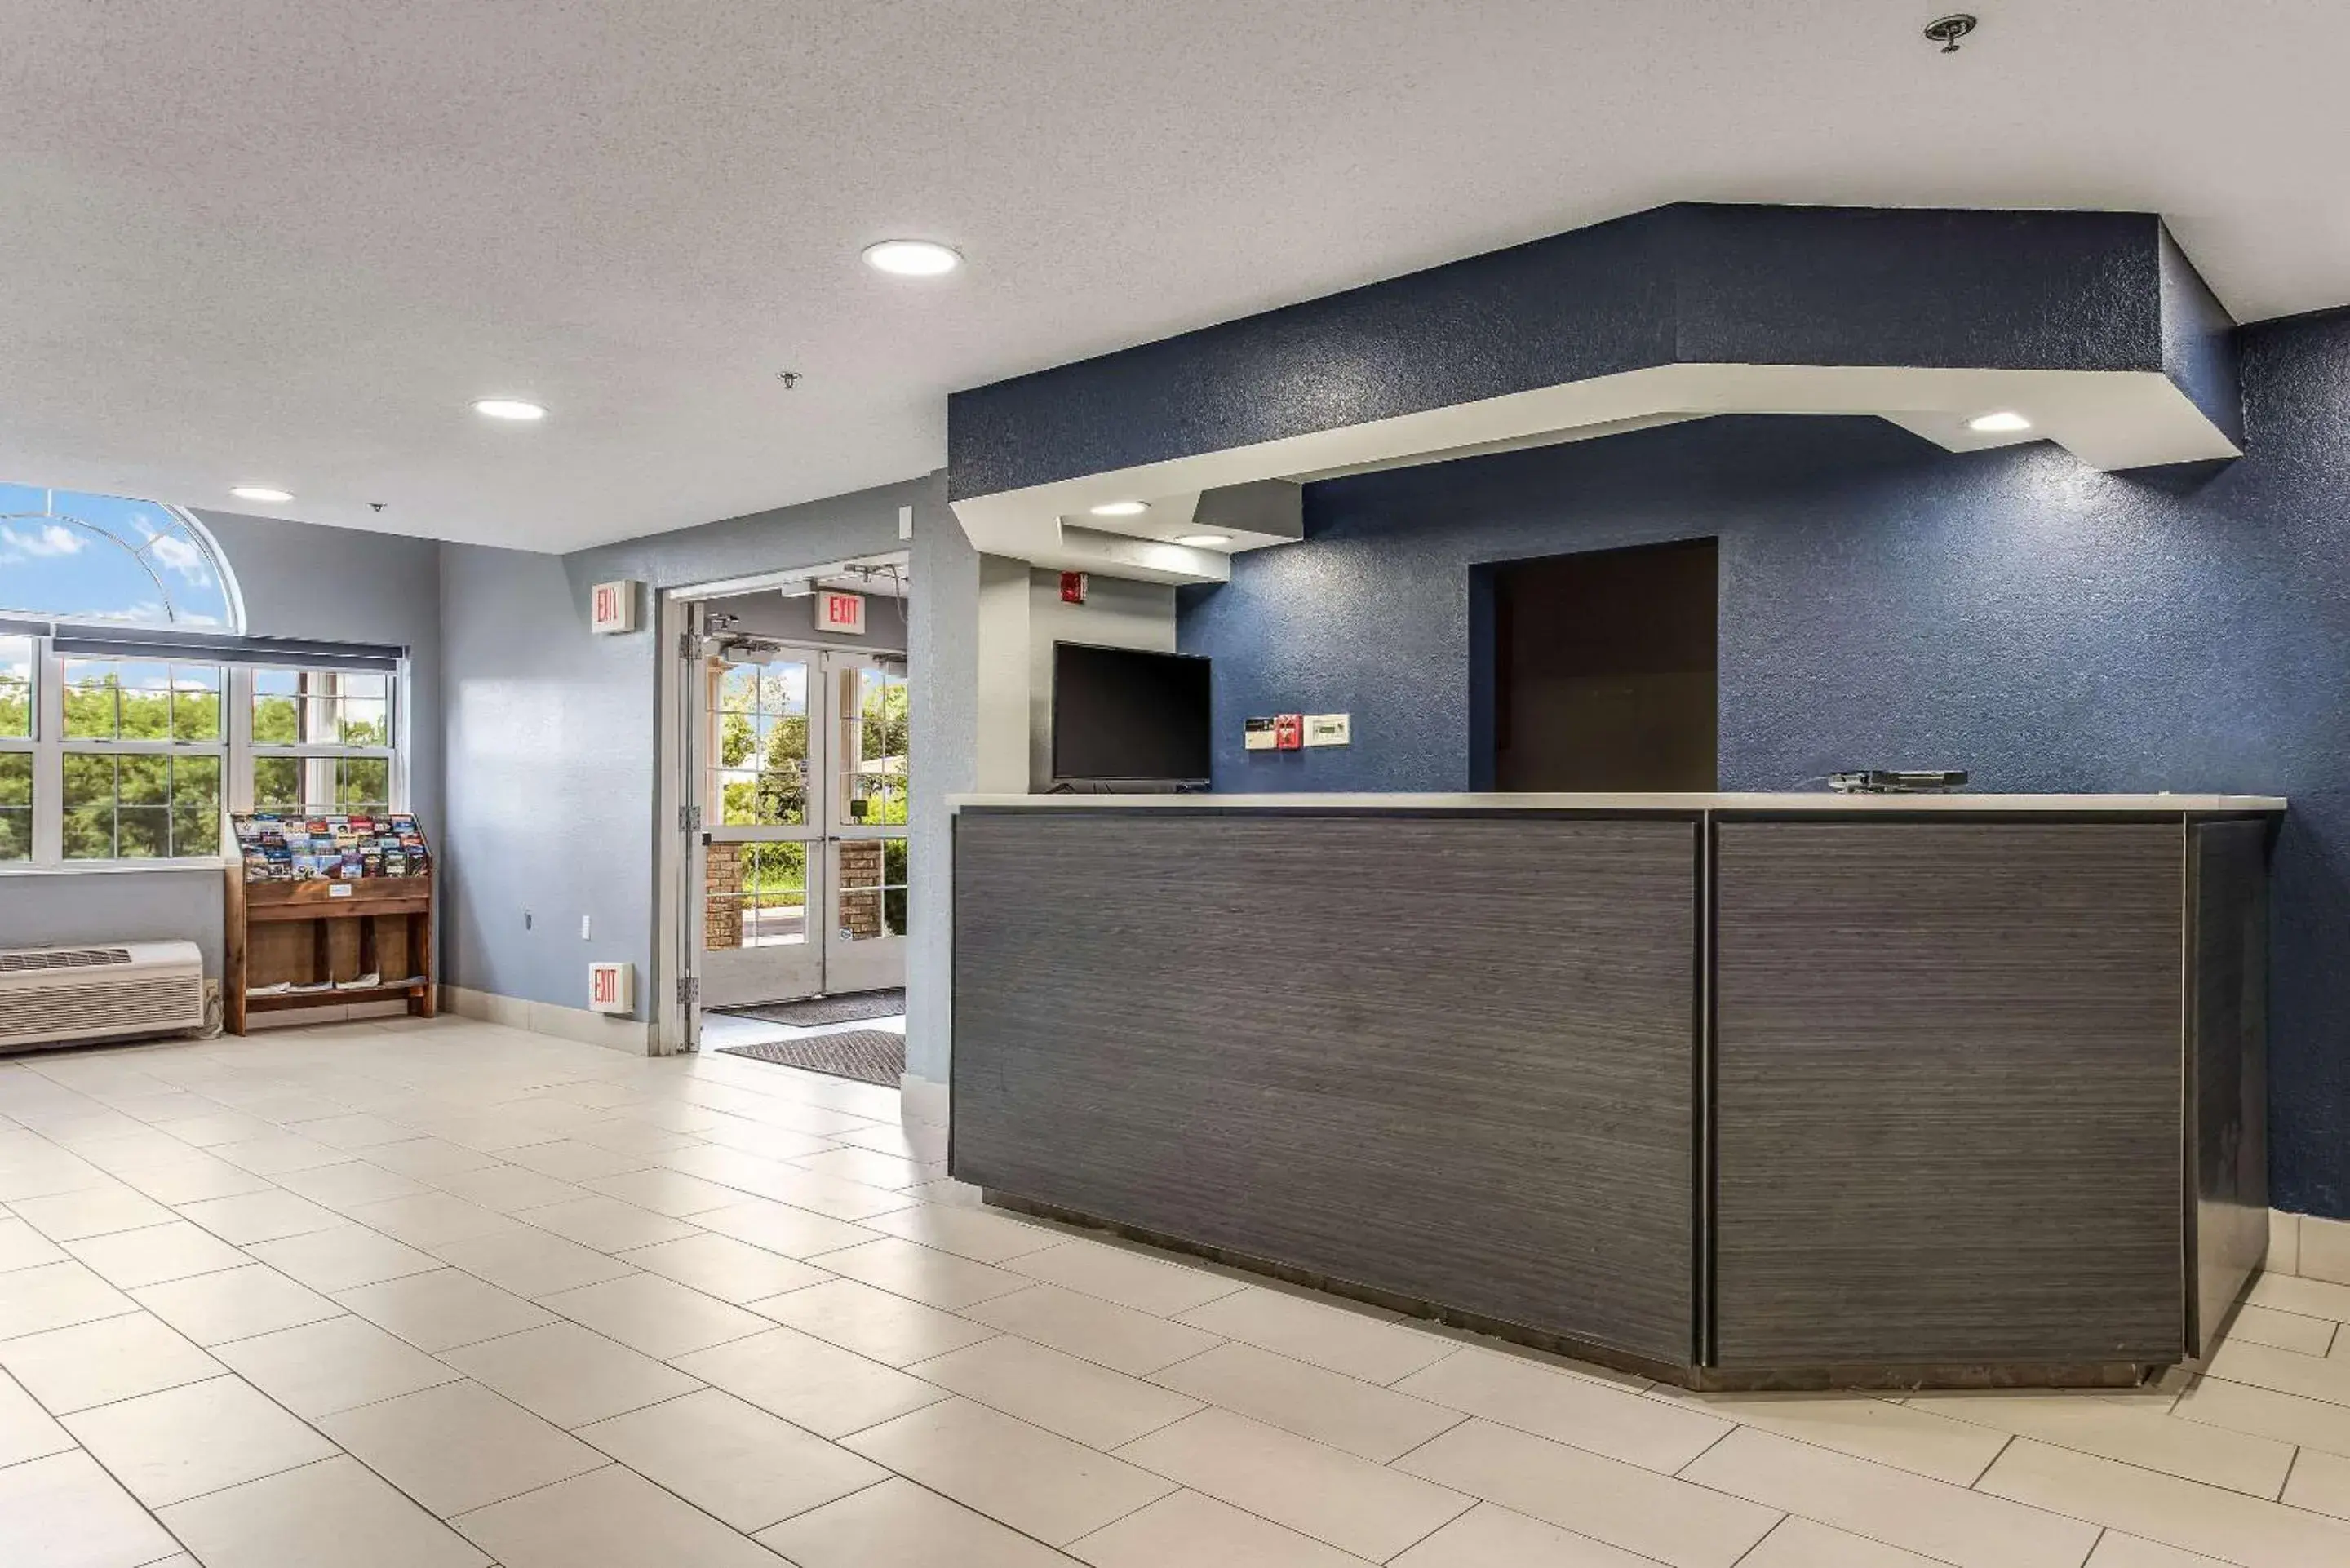 Lobby or reception, Lobby/Reception in Quality Inn Owatonna Near Medical Center